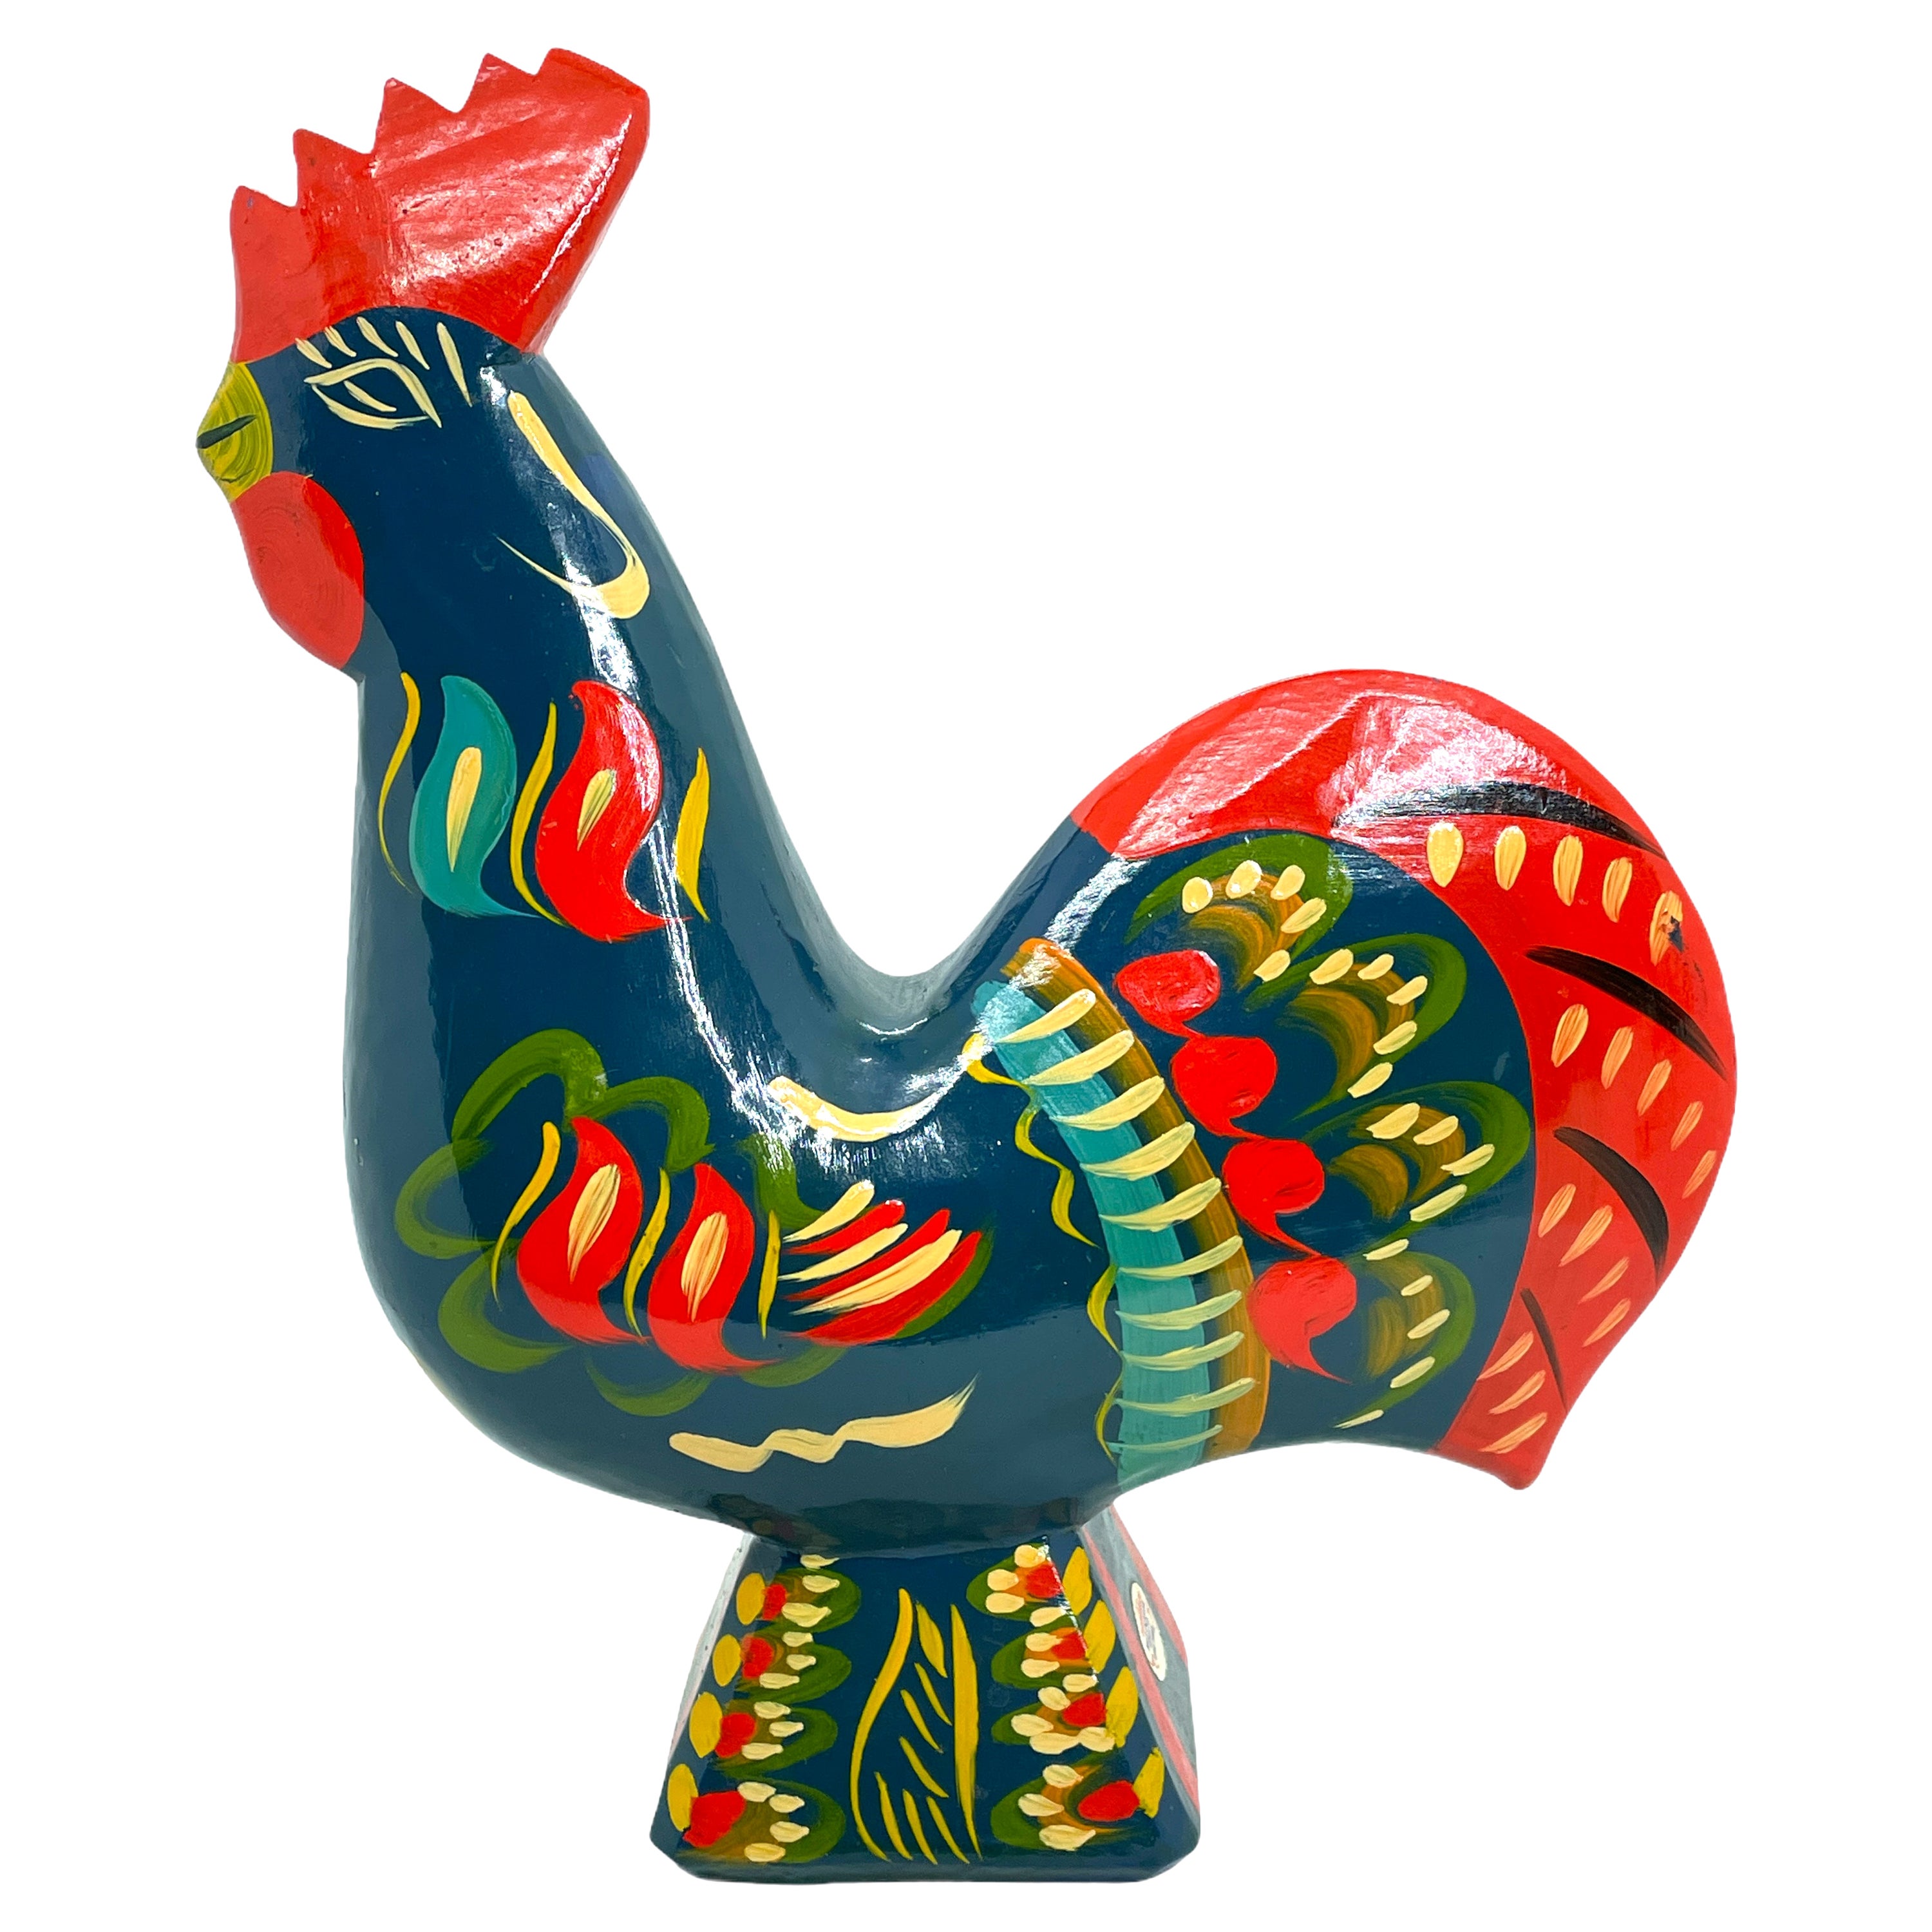 Grand poulet de coq Dala suédois rare par Nils Olsson, Suède Folk Art